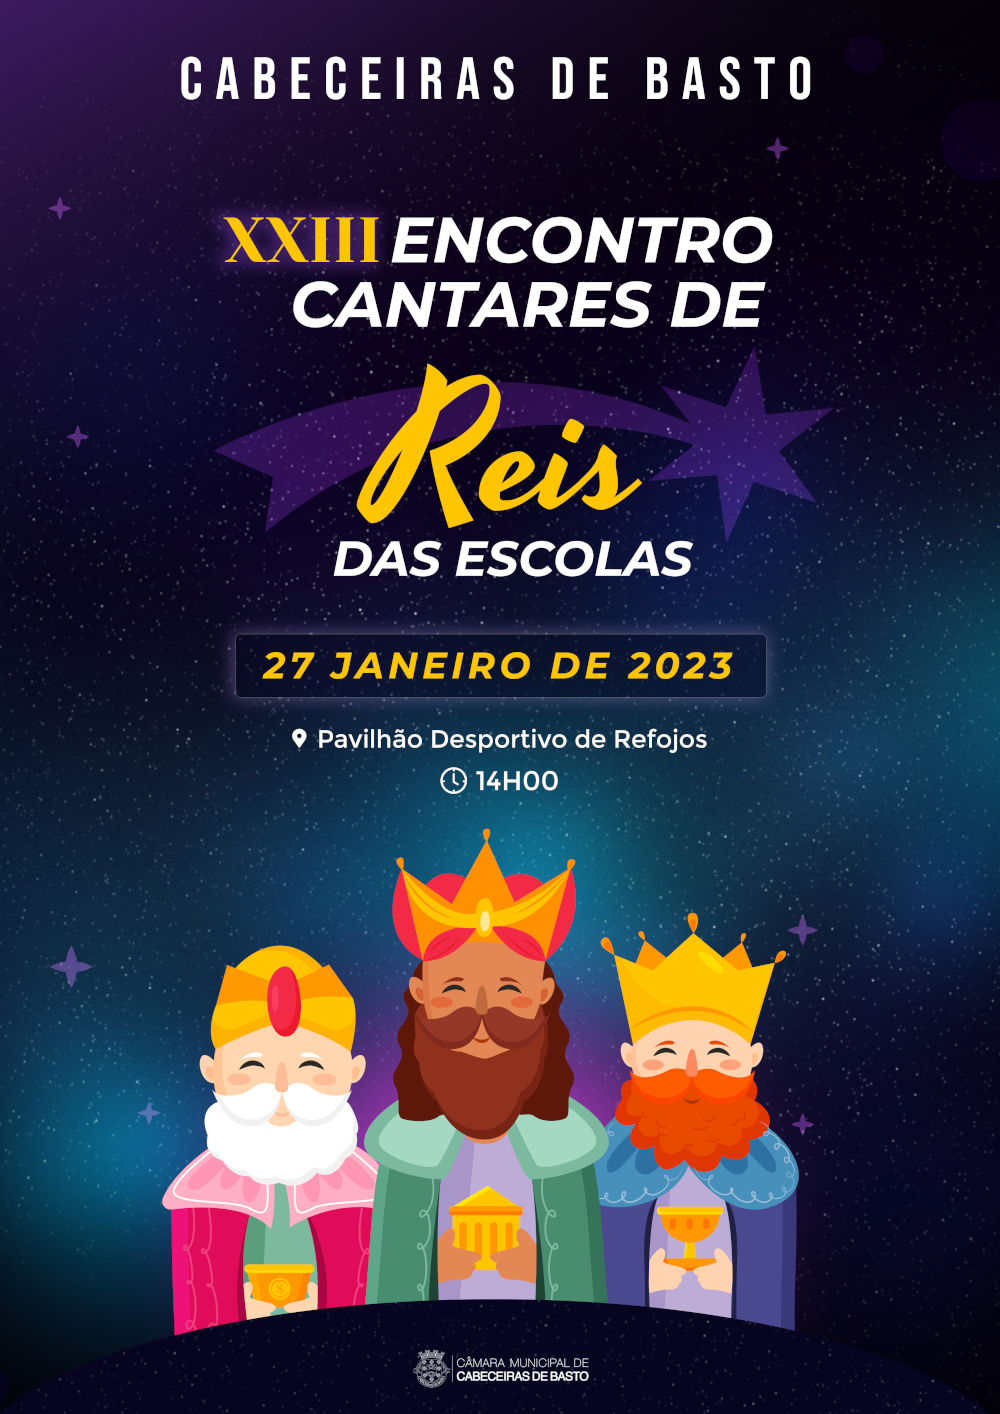 Reis das Escolas sobem ao palco no dia 27 de janeiro